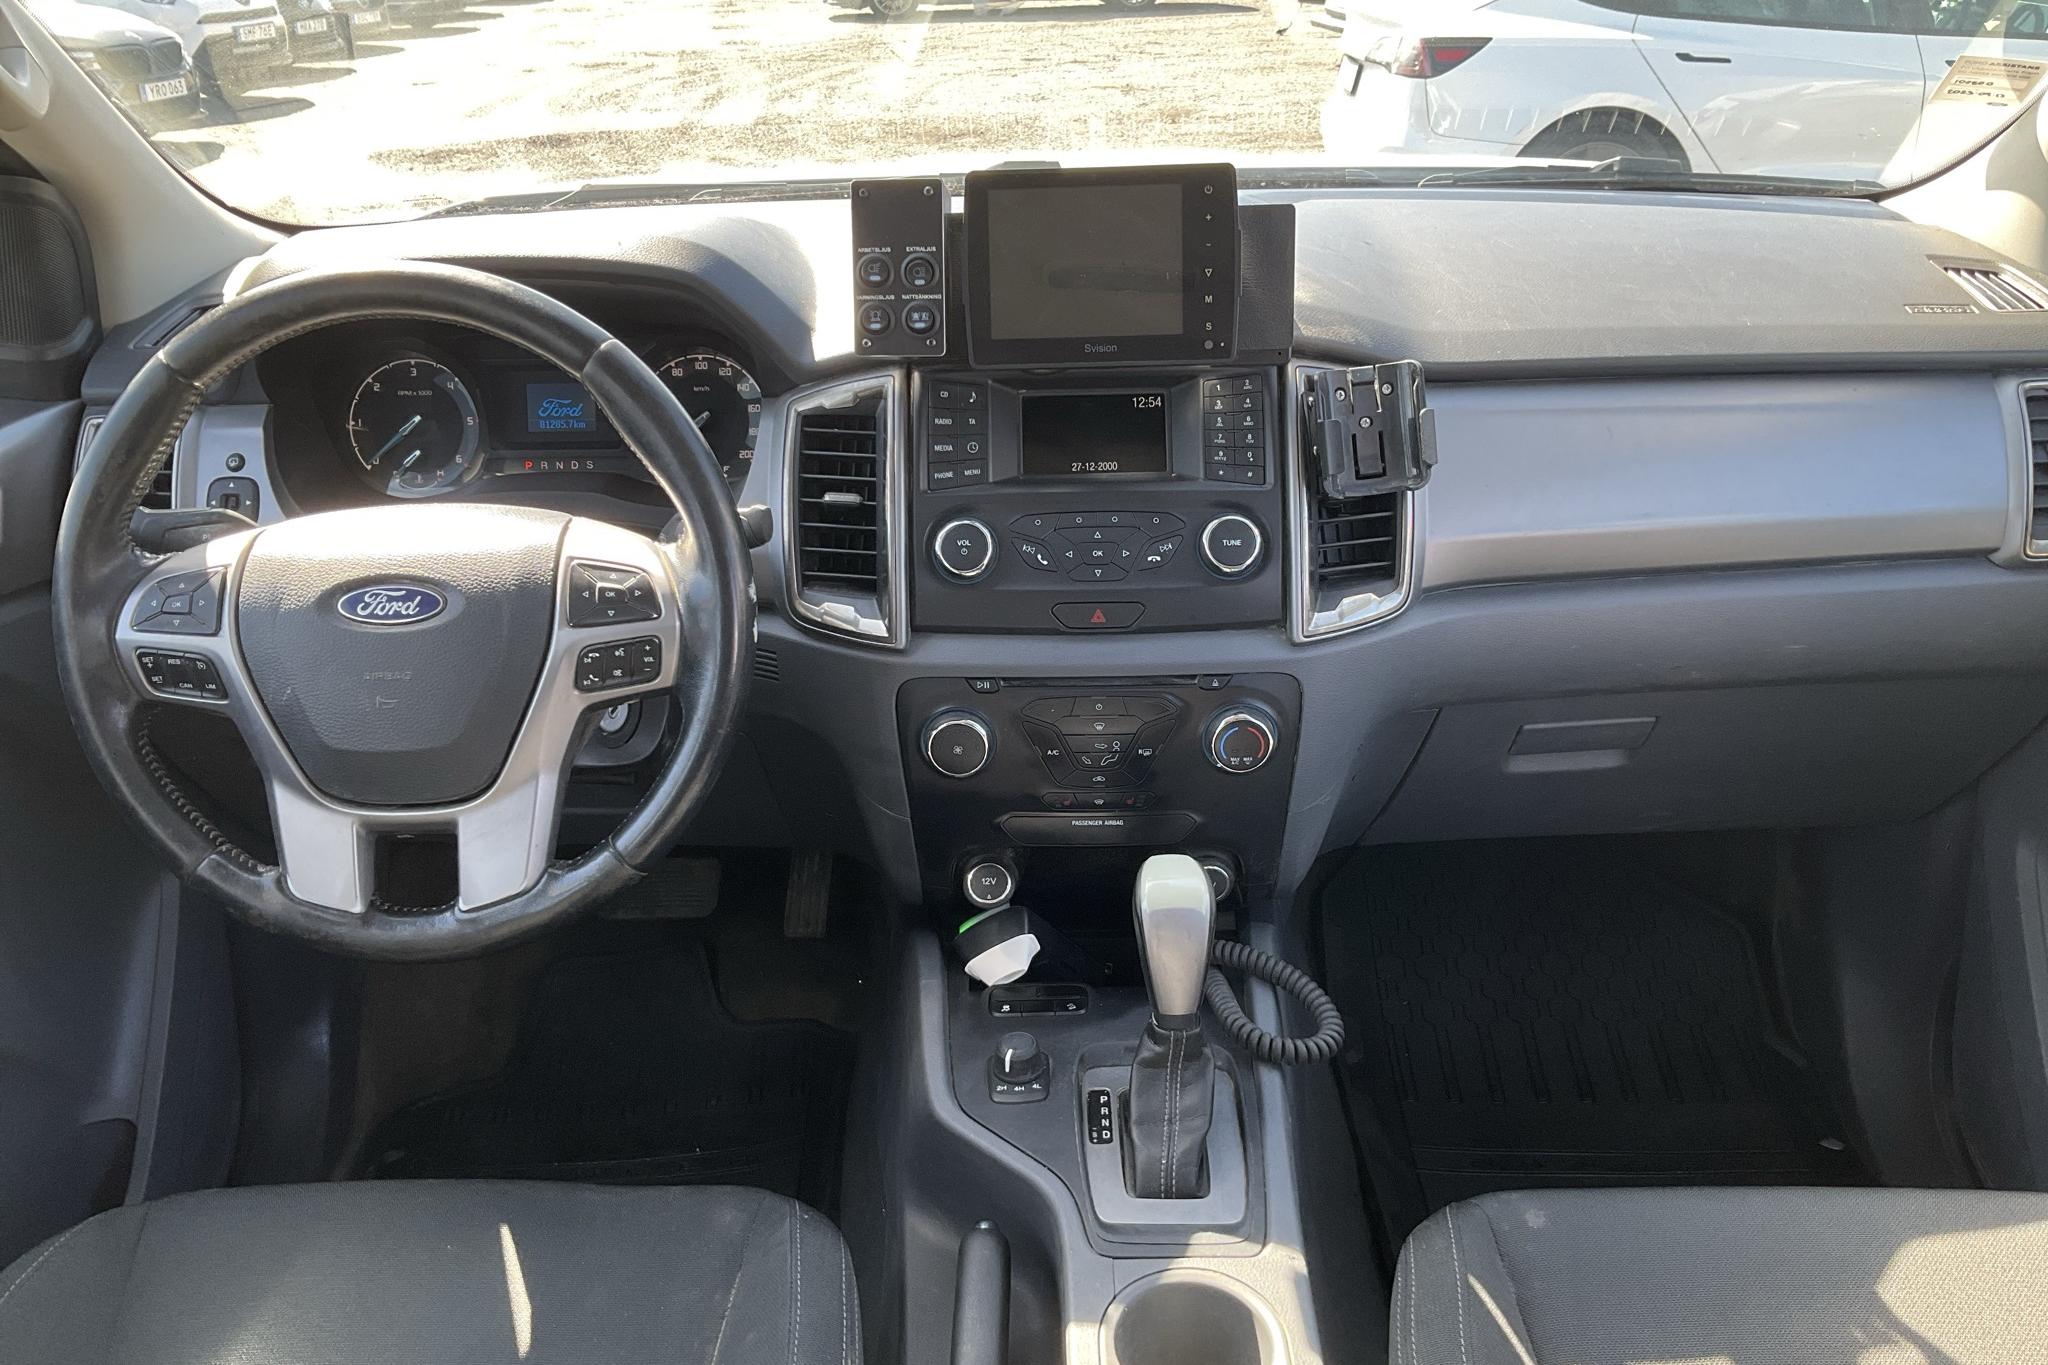 Ford Ranger 2.2 TDCi 4WD (160hk) - 81 290 km - Automaattinen - valkoinen - 2017